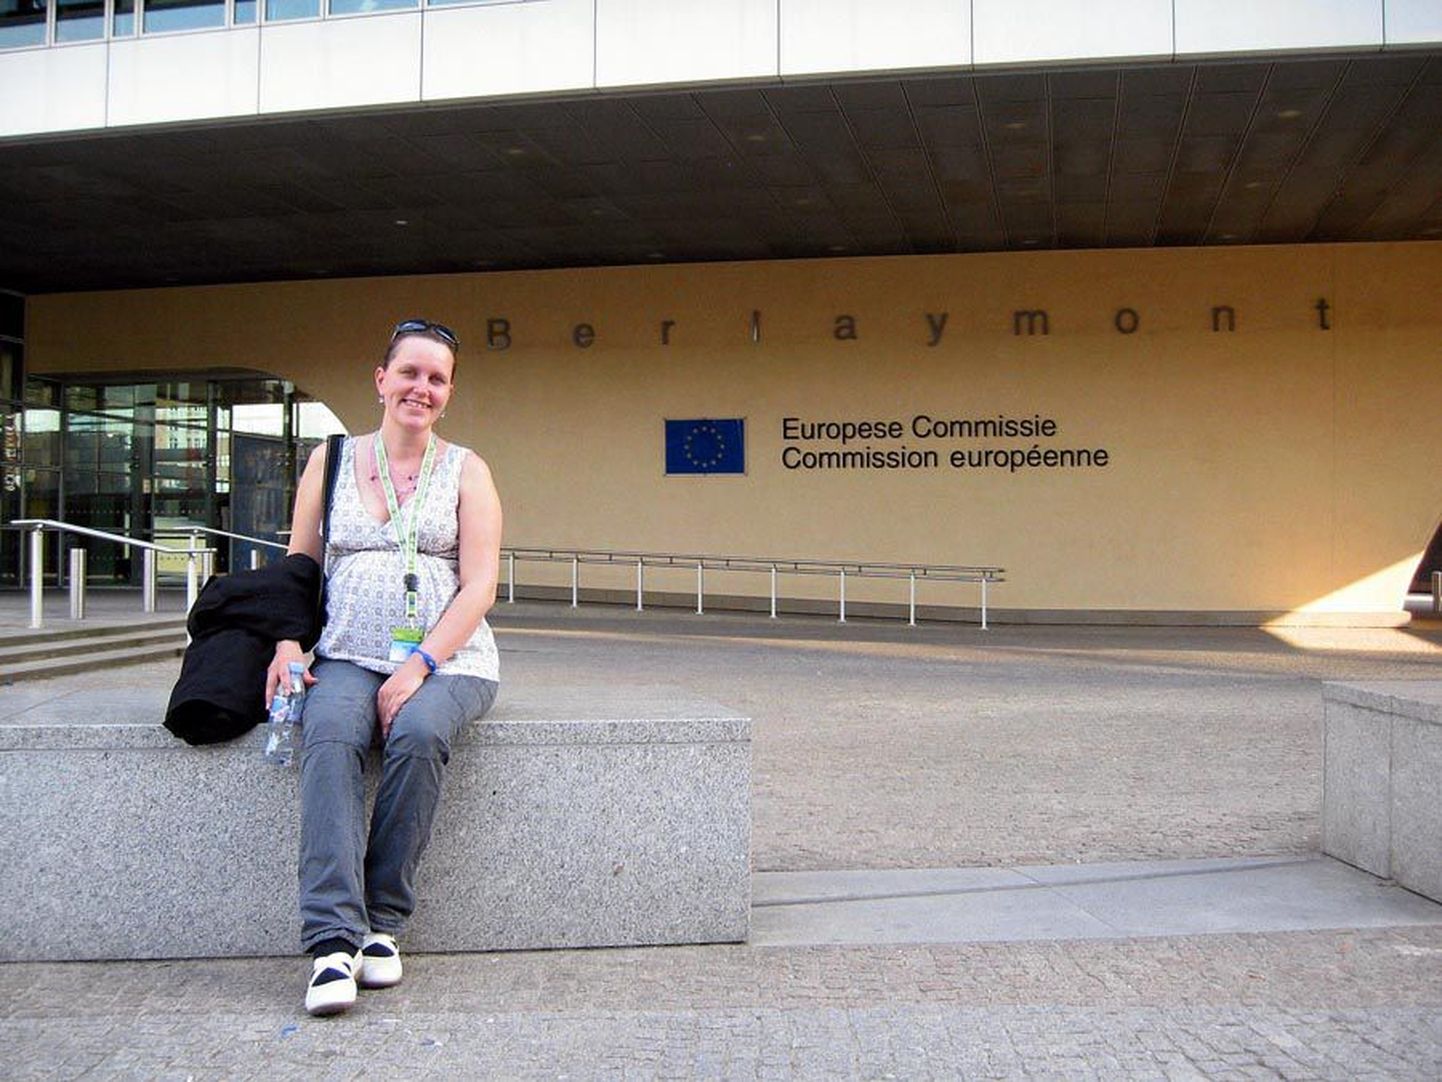 Brüsselis oli Kadri Linderi üks soov näha euroliidu institutsioone seestpoolt. Pildil paistab tema tagant Euroopa Komisjoni hoone, kus leidis aset keelelugude võistluse autasustamine.